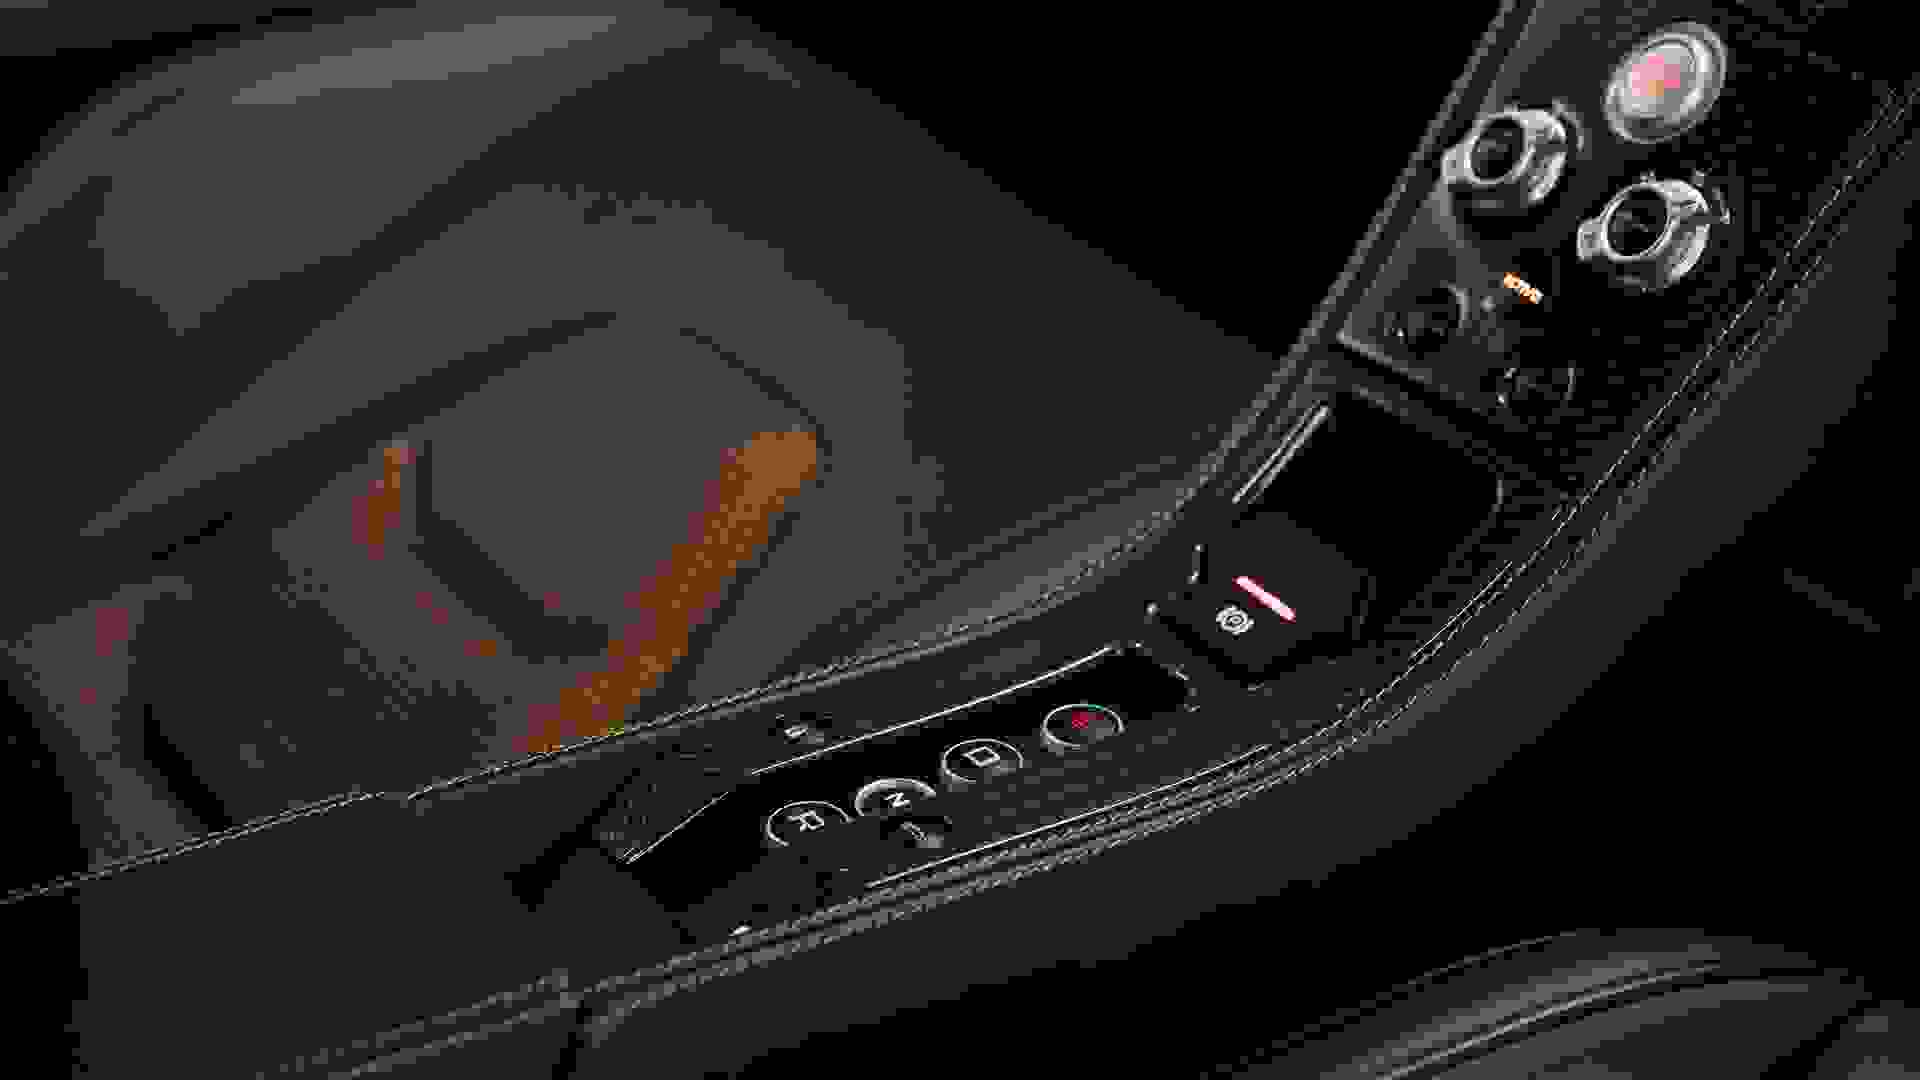 McLaren MP4-12C Photo b1e389a4-3edd-49ce-9f71-1e434bee38a9.jpg